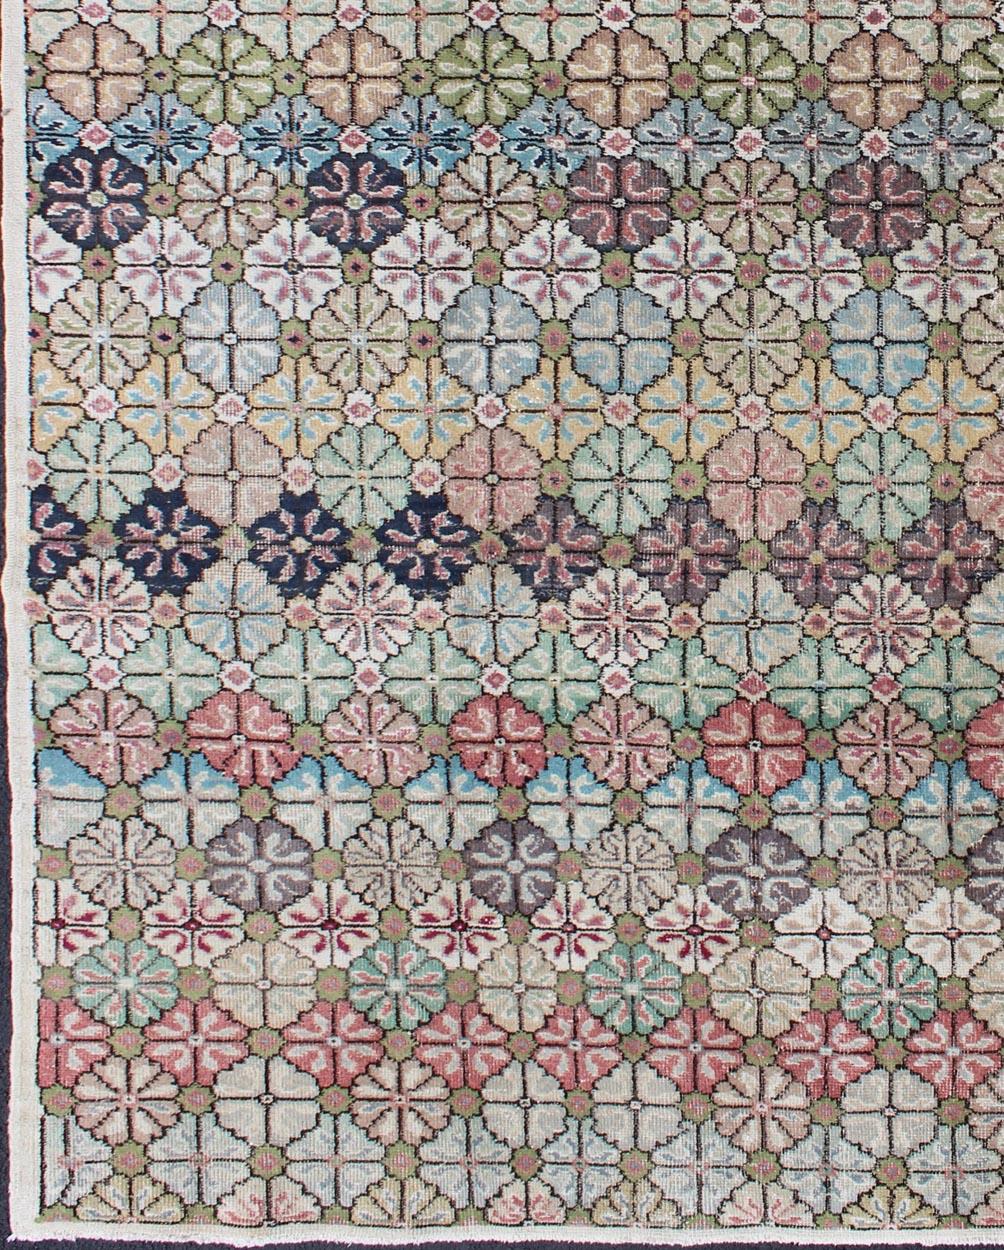 Moderne Mitte des Jahrhunderts,  Weinlese  Teppich in mehreren Farben in modernem Design,  EN-1038, Teppich für moderne Innenräume
Dieser einzigartige türkische Teppich ist rautenförmig und in gedeckten Farben gefleckt und gesprenkelt und hat ein